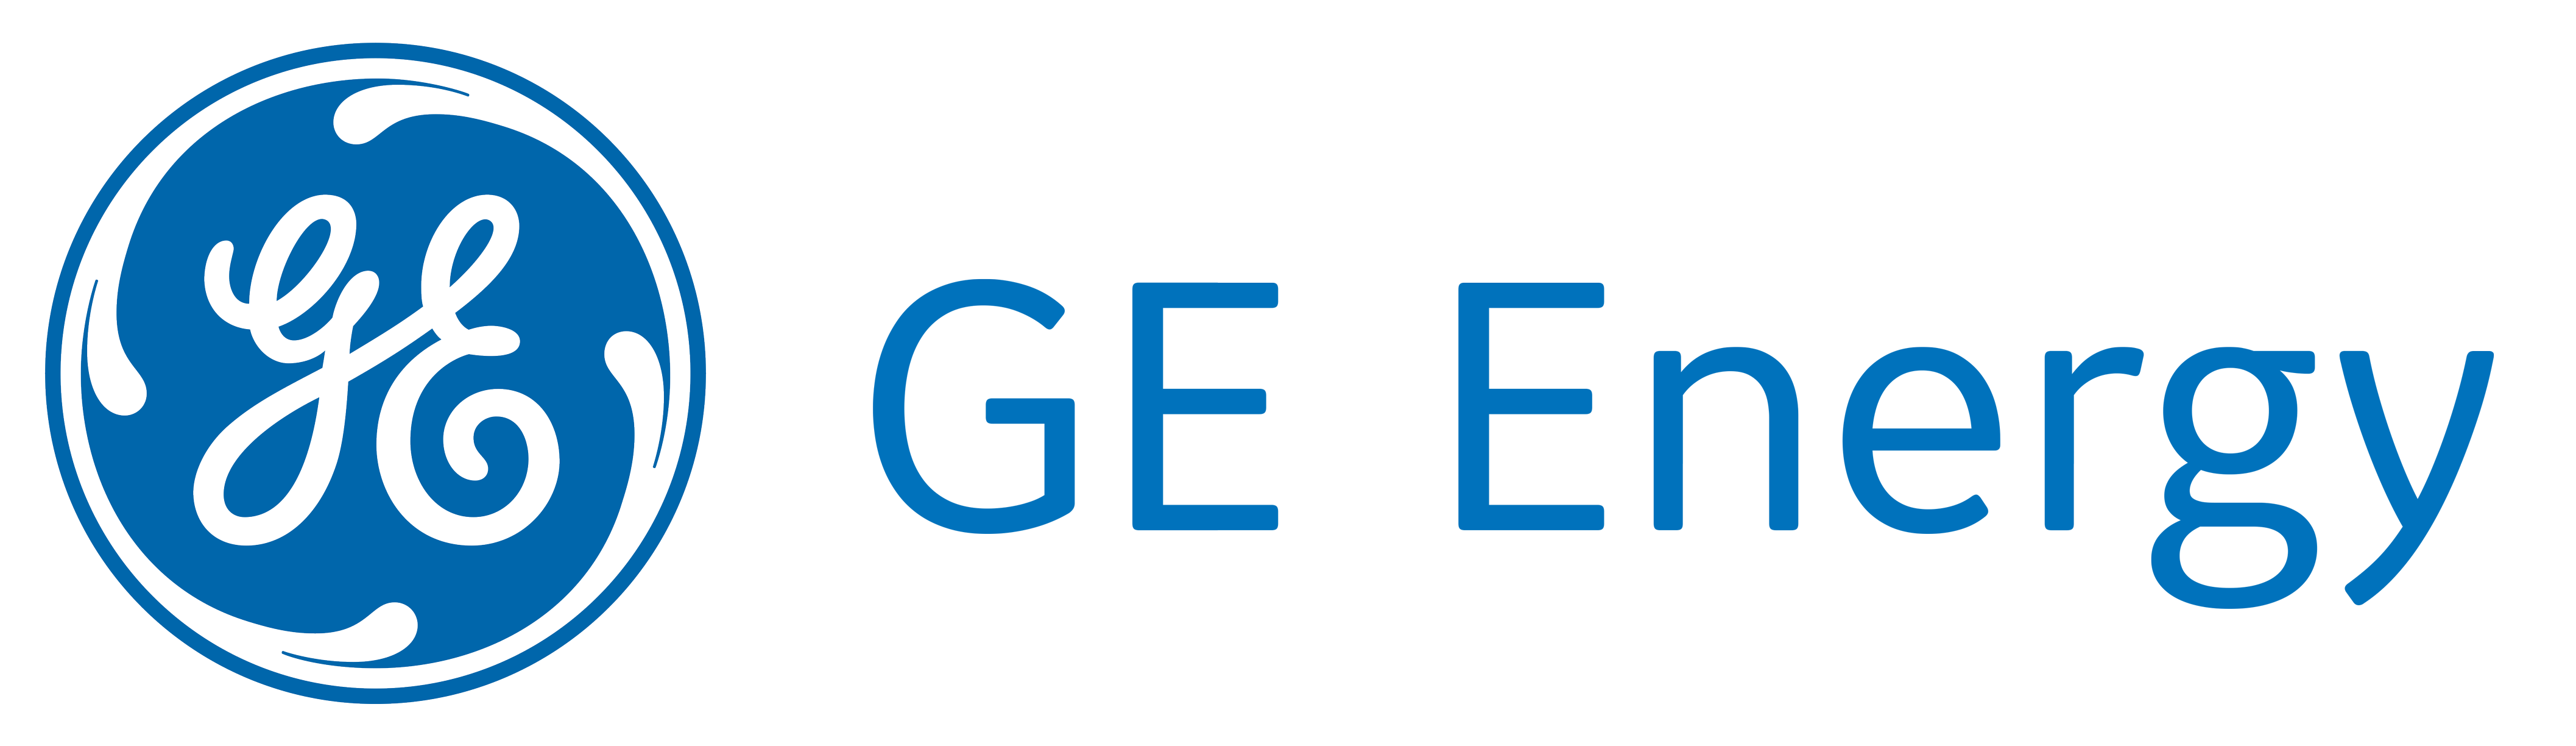 GE Power - Logo